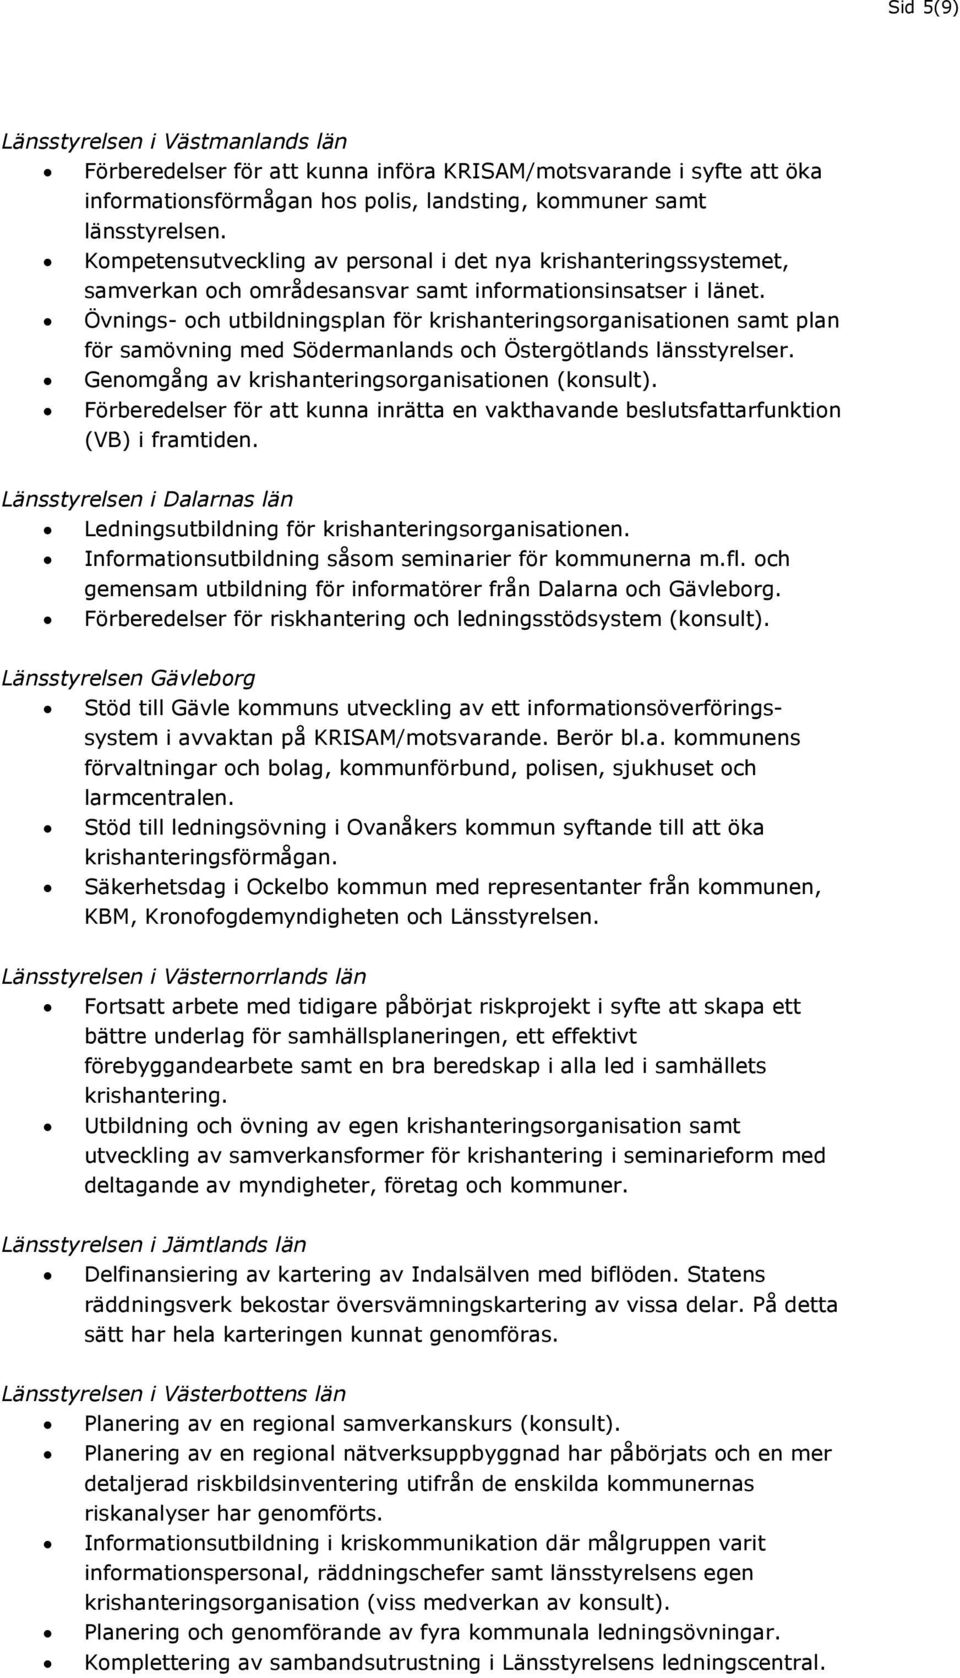 Övnings- och utbildningsplan för krishanteringsorganisationen samt plan för samövning med Södermanlands och Östergötlands länsstyrelser. Genomgång av krishanteringsorganisationen (konsult).